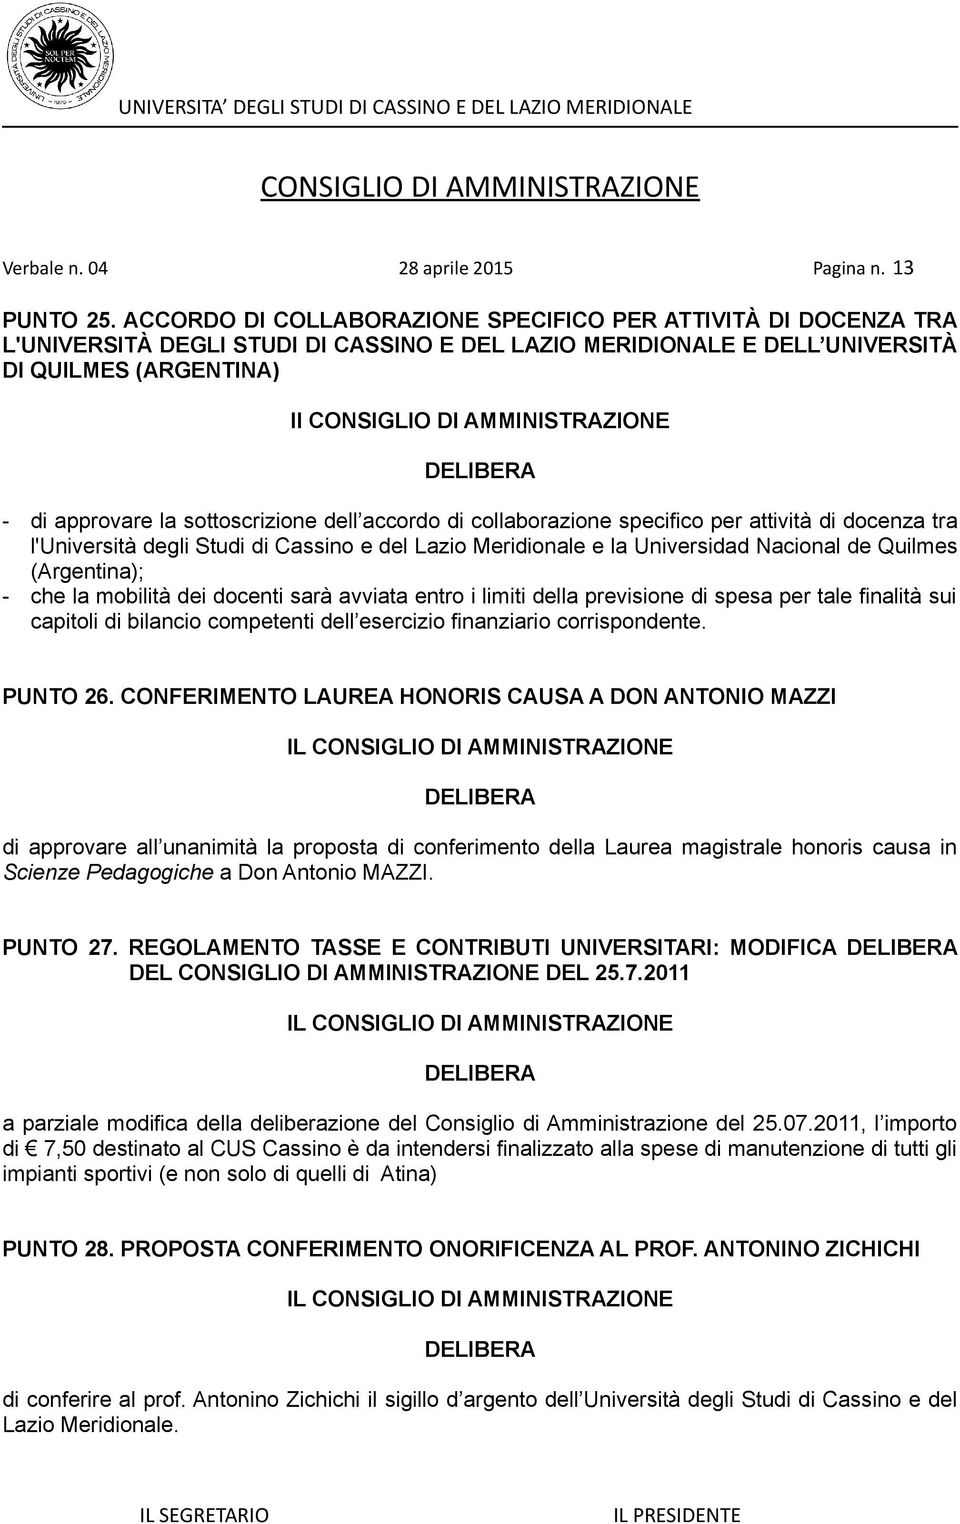 sottoscrizione dell accordo di collaborazione specifico per attività di docenza tra l'università degli Studi di Cassino e del Lazio Meridionale e la Universidad Nacional de Quilmes (Argentina); - che